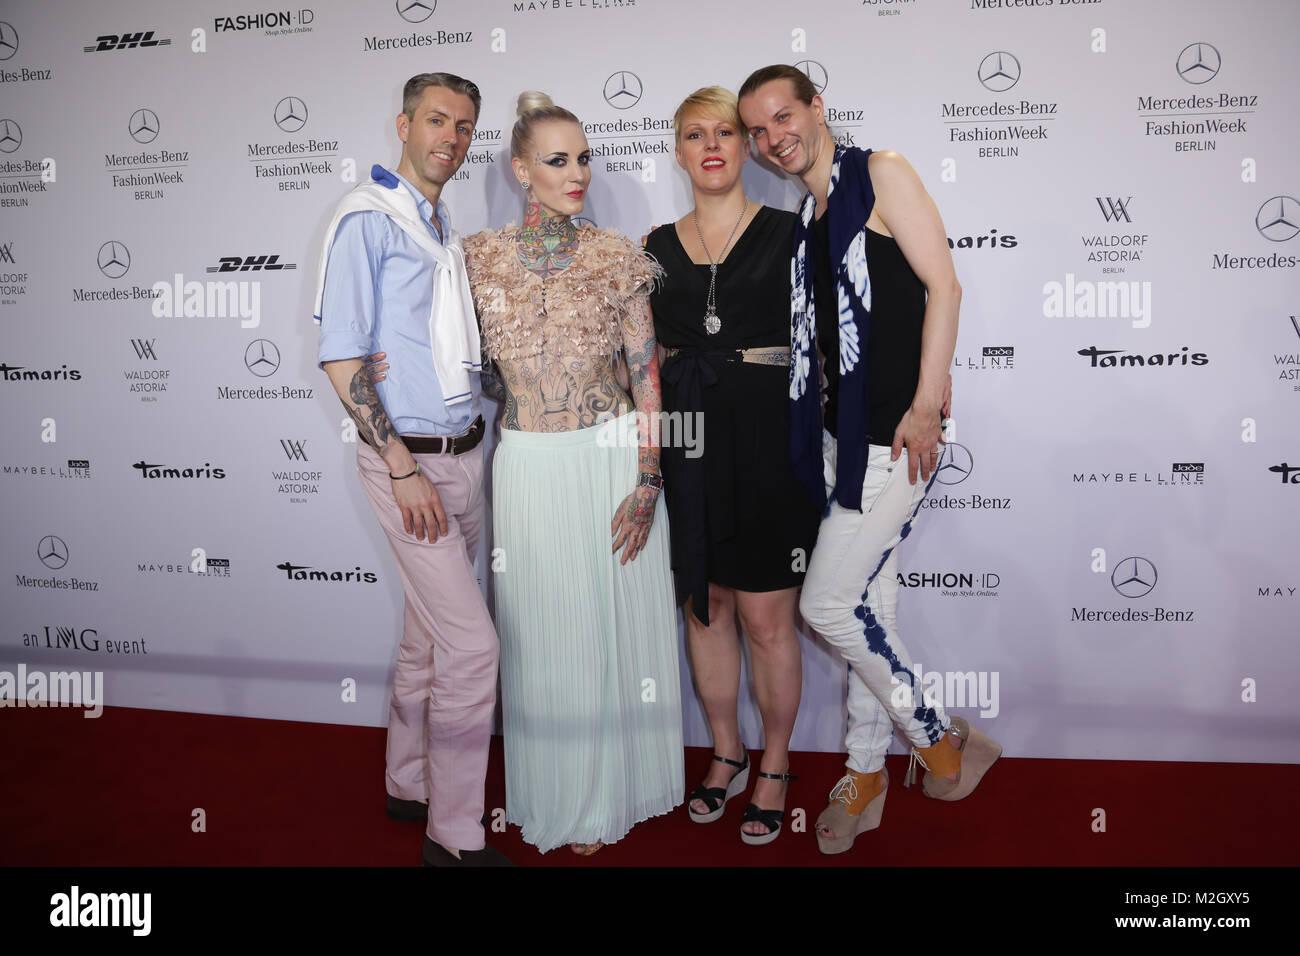 Mercedes Benz Zelt zur Fashionweek Berlino 2013 Foto Stock